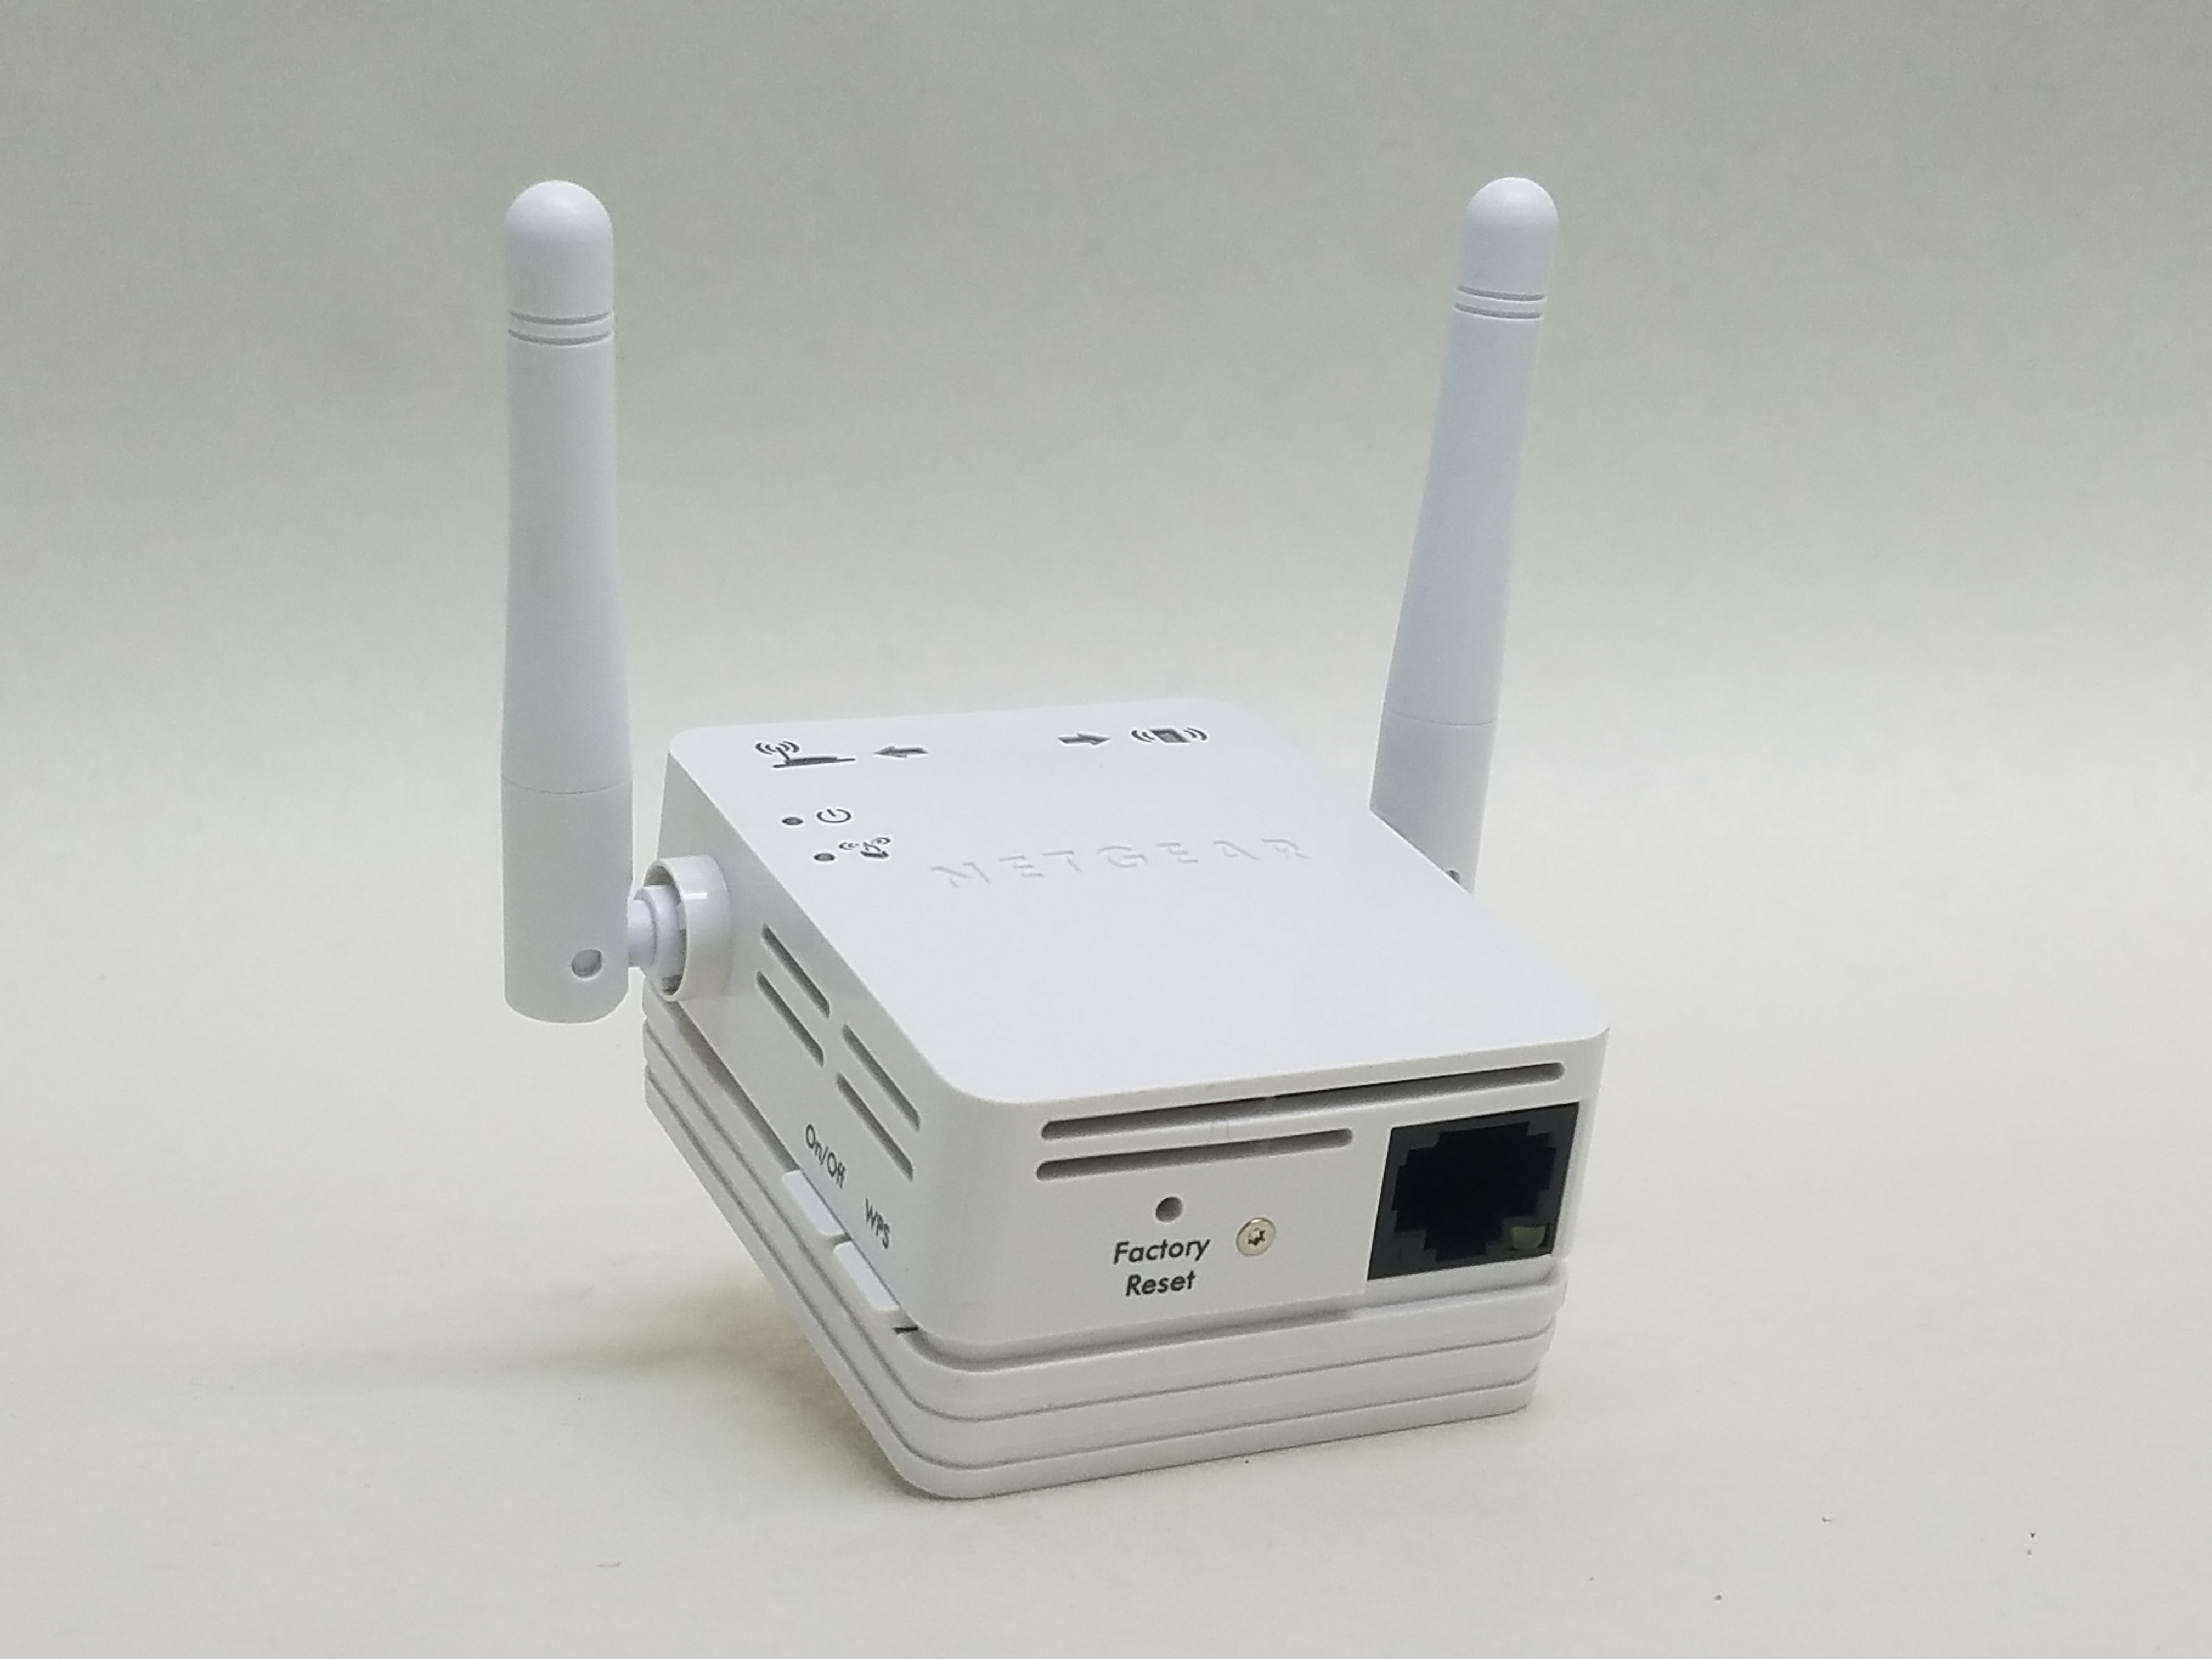 WN3000RPv3, N300 WiFi Range Extender